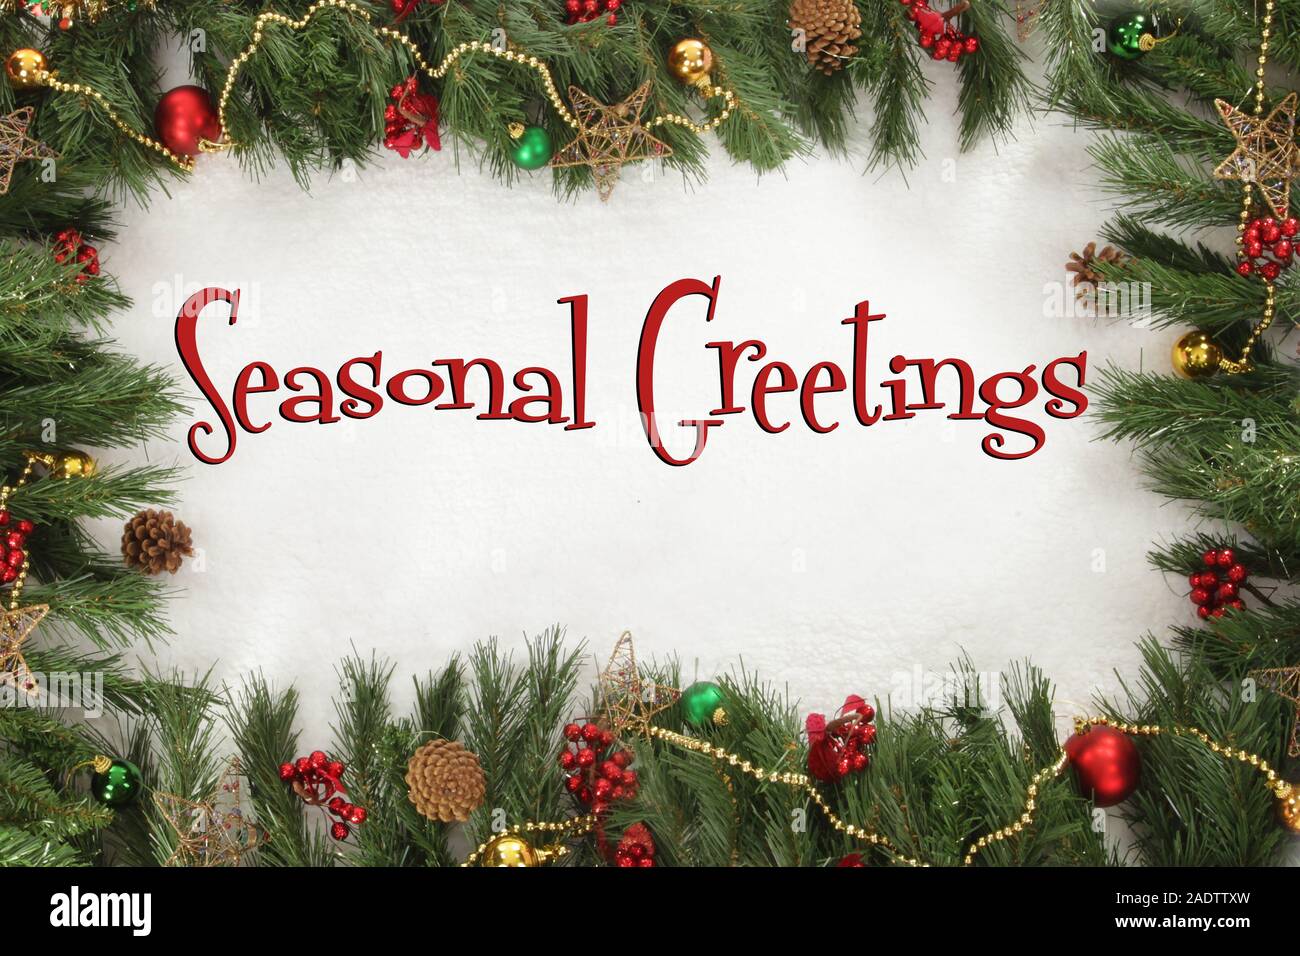 Christmas,  Seasonal greetings sign Stock Photo